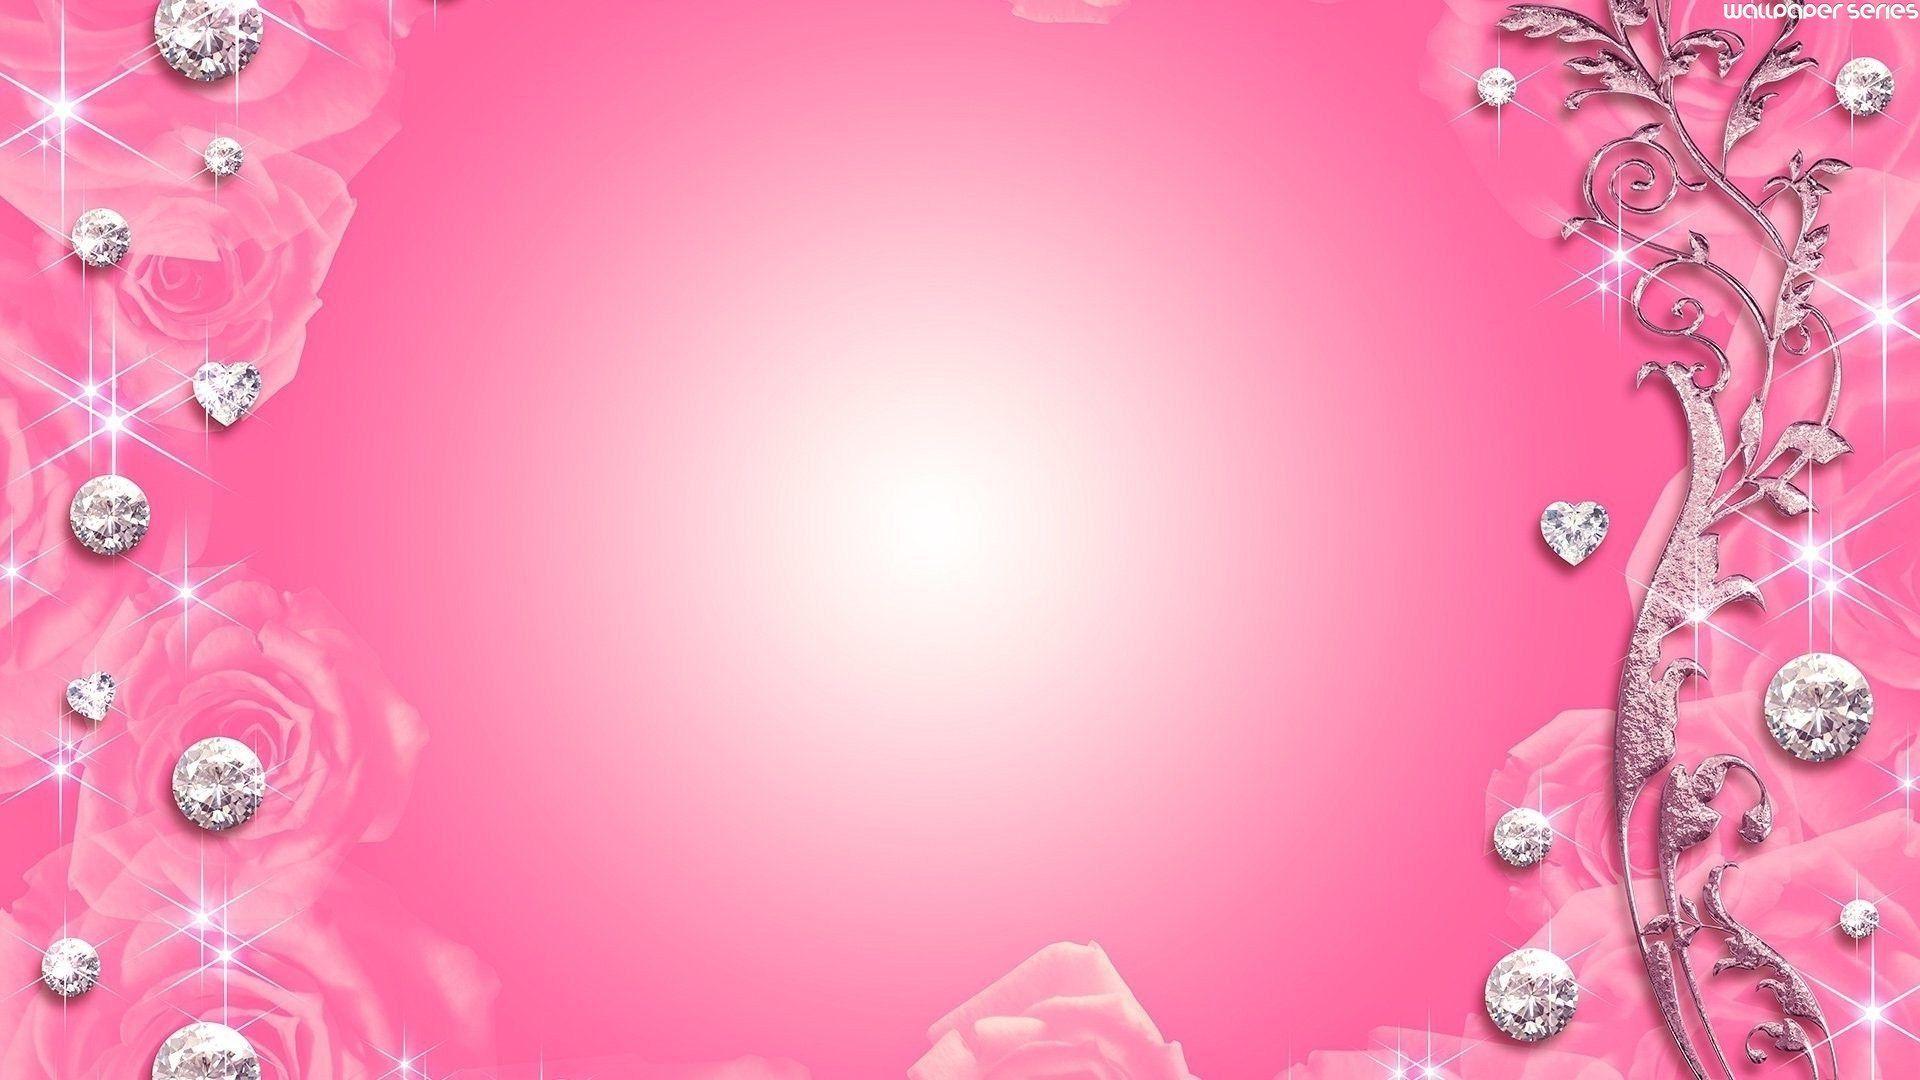 Hình nền màu hồng nhạt - Wallpaper Cave: Hình nền màu hồng nhạt là lựa chọn hoàn hảo cho những ai yêu thích sự dịu mát và tinh tế. Wallpaper Cave cung cấp hình nền đủ loại với gam màu này, từ hoa văn đầy phong cách đến những hình ảnh tĩnh yên bình. Hãy khám phá ngay để tìm cho mình một bức hình nền hoàn hảo!